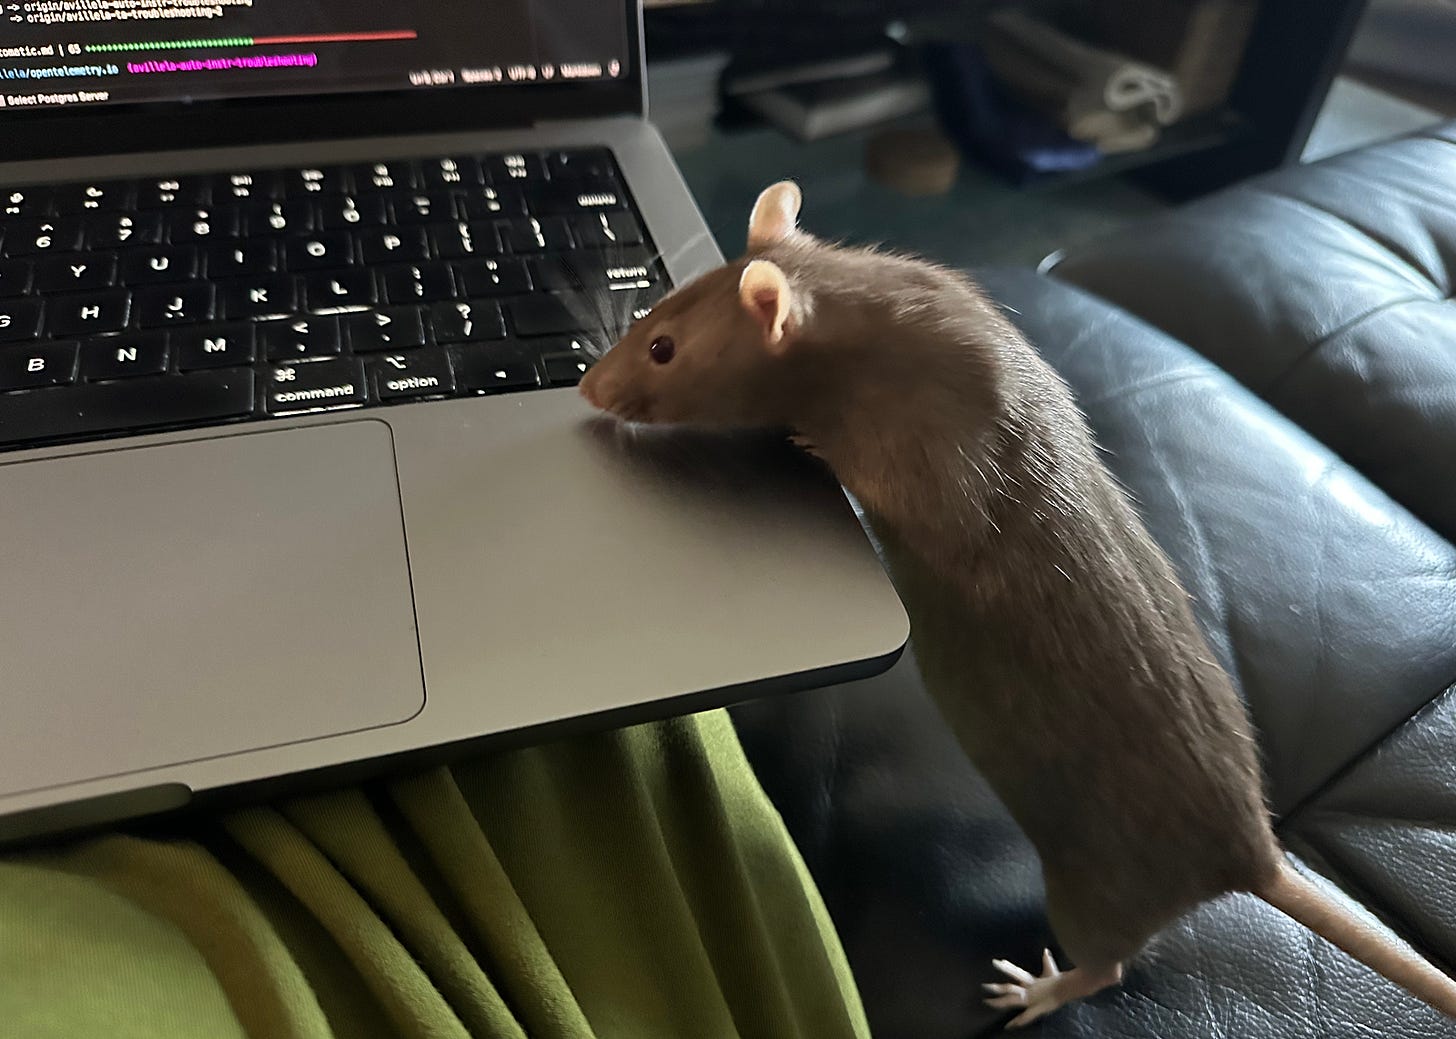 Brown fancy rat peering over laptop keyboard.